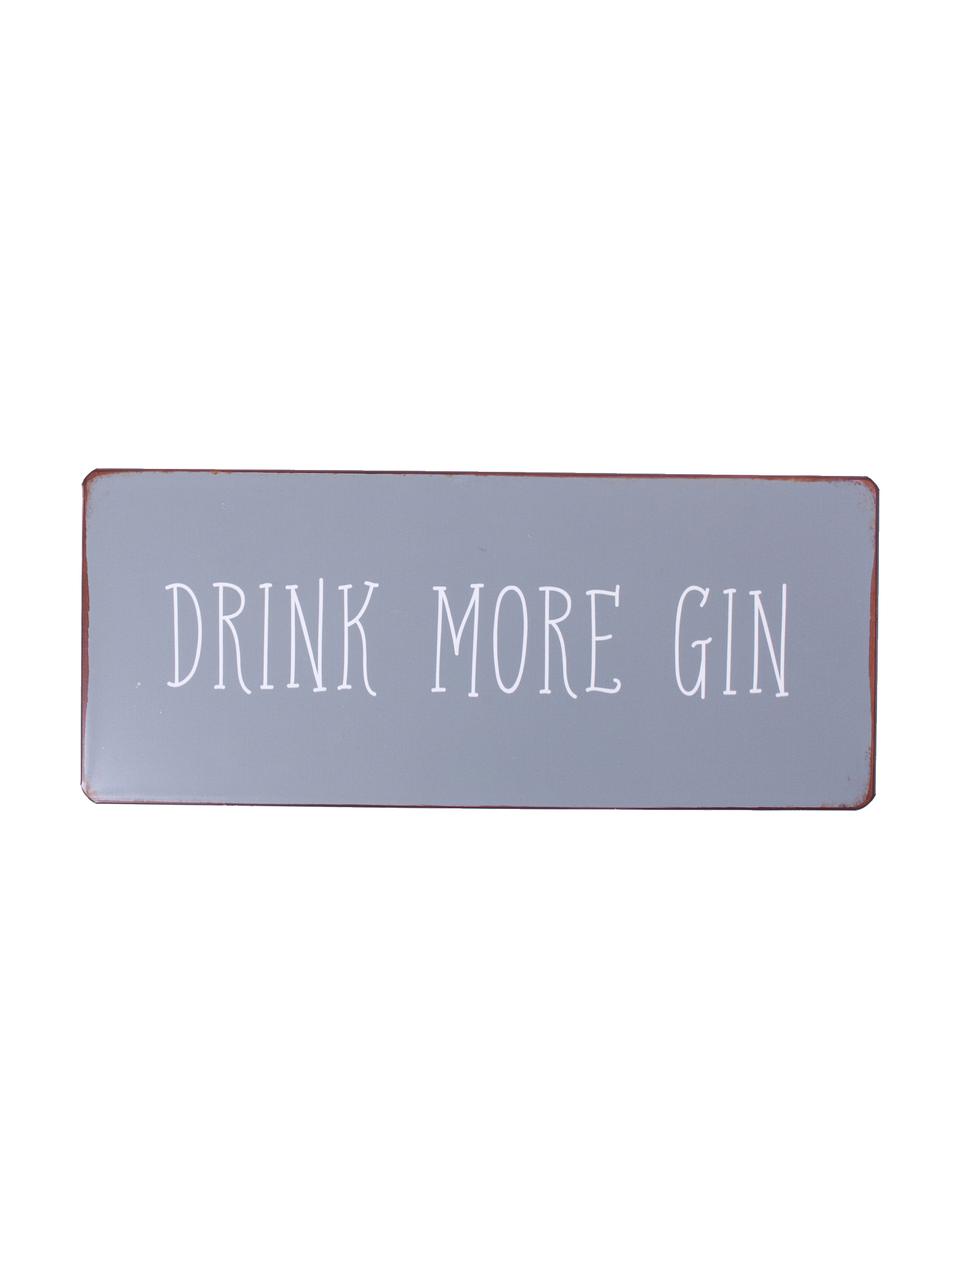 Wandschild Drink more gin, Metall, mit Motivfolie beklebt, Grau, Weiss, Rostfarben, 31 x 13 cm